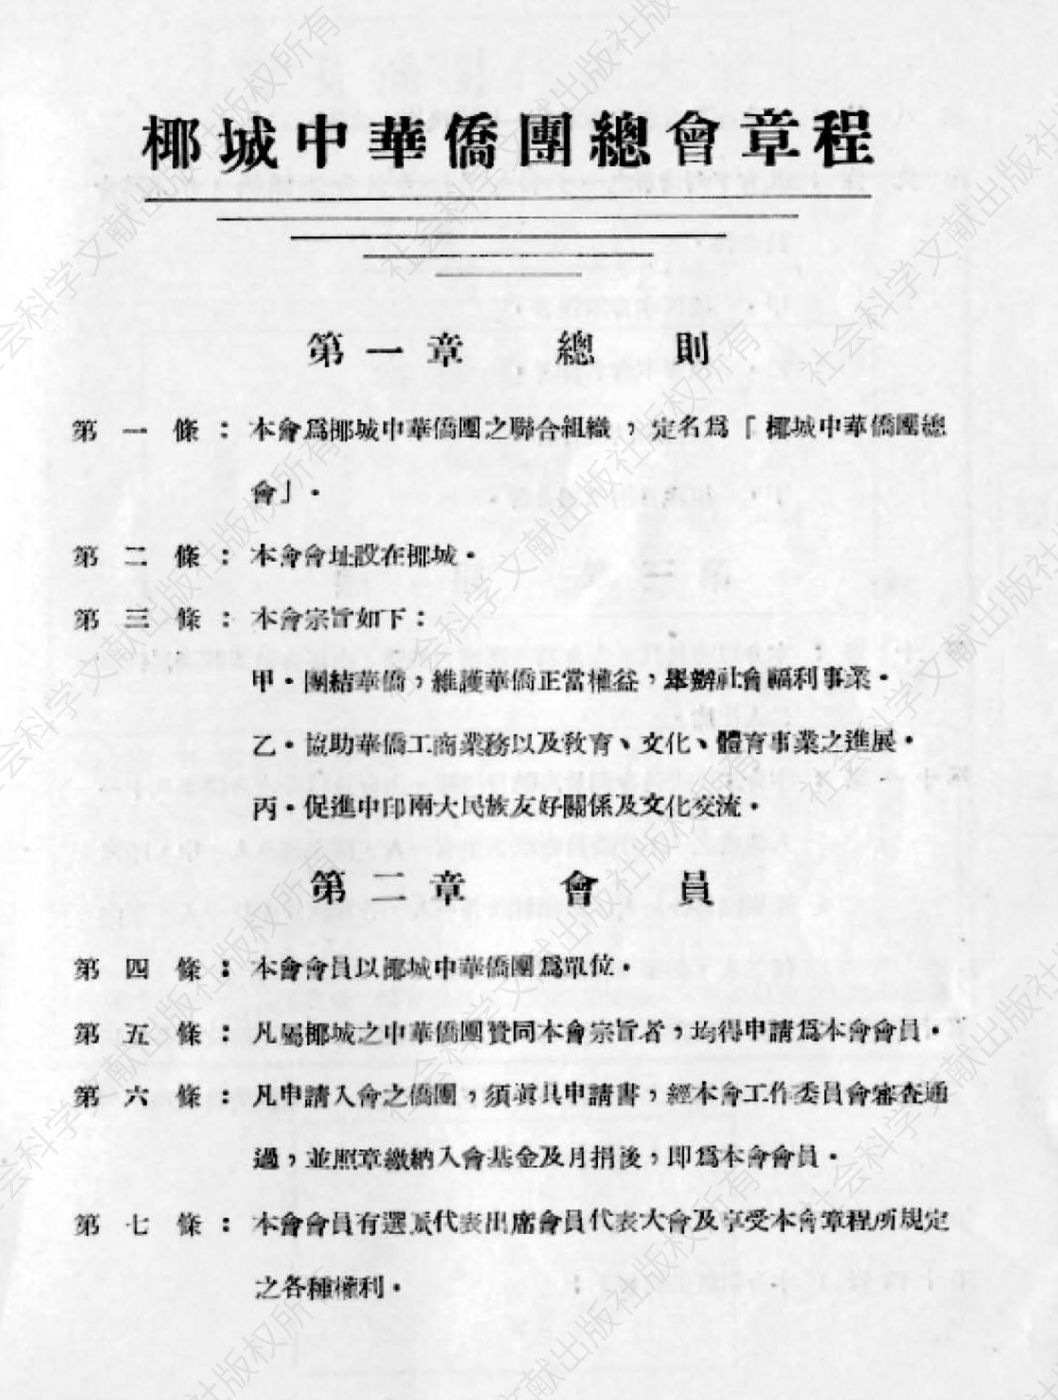 图2 《印度尼西亚雅加达中华侨团总会章程》中文版内页